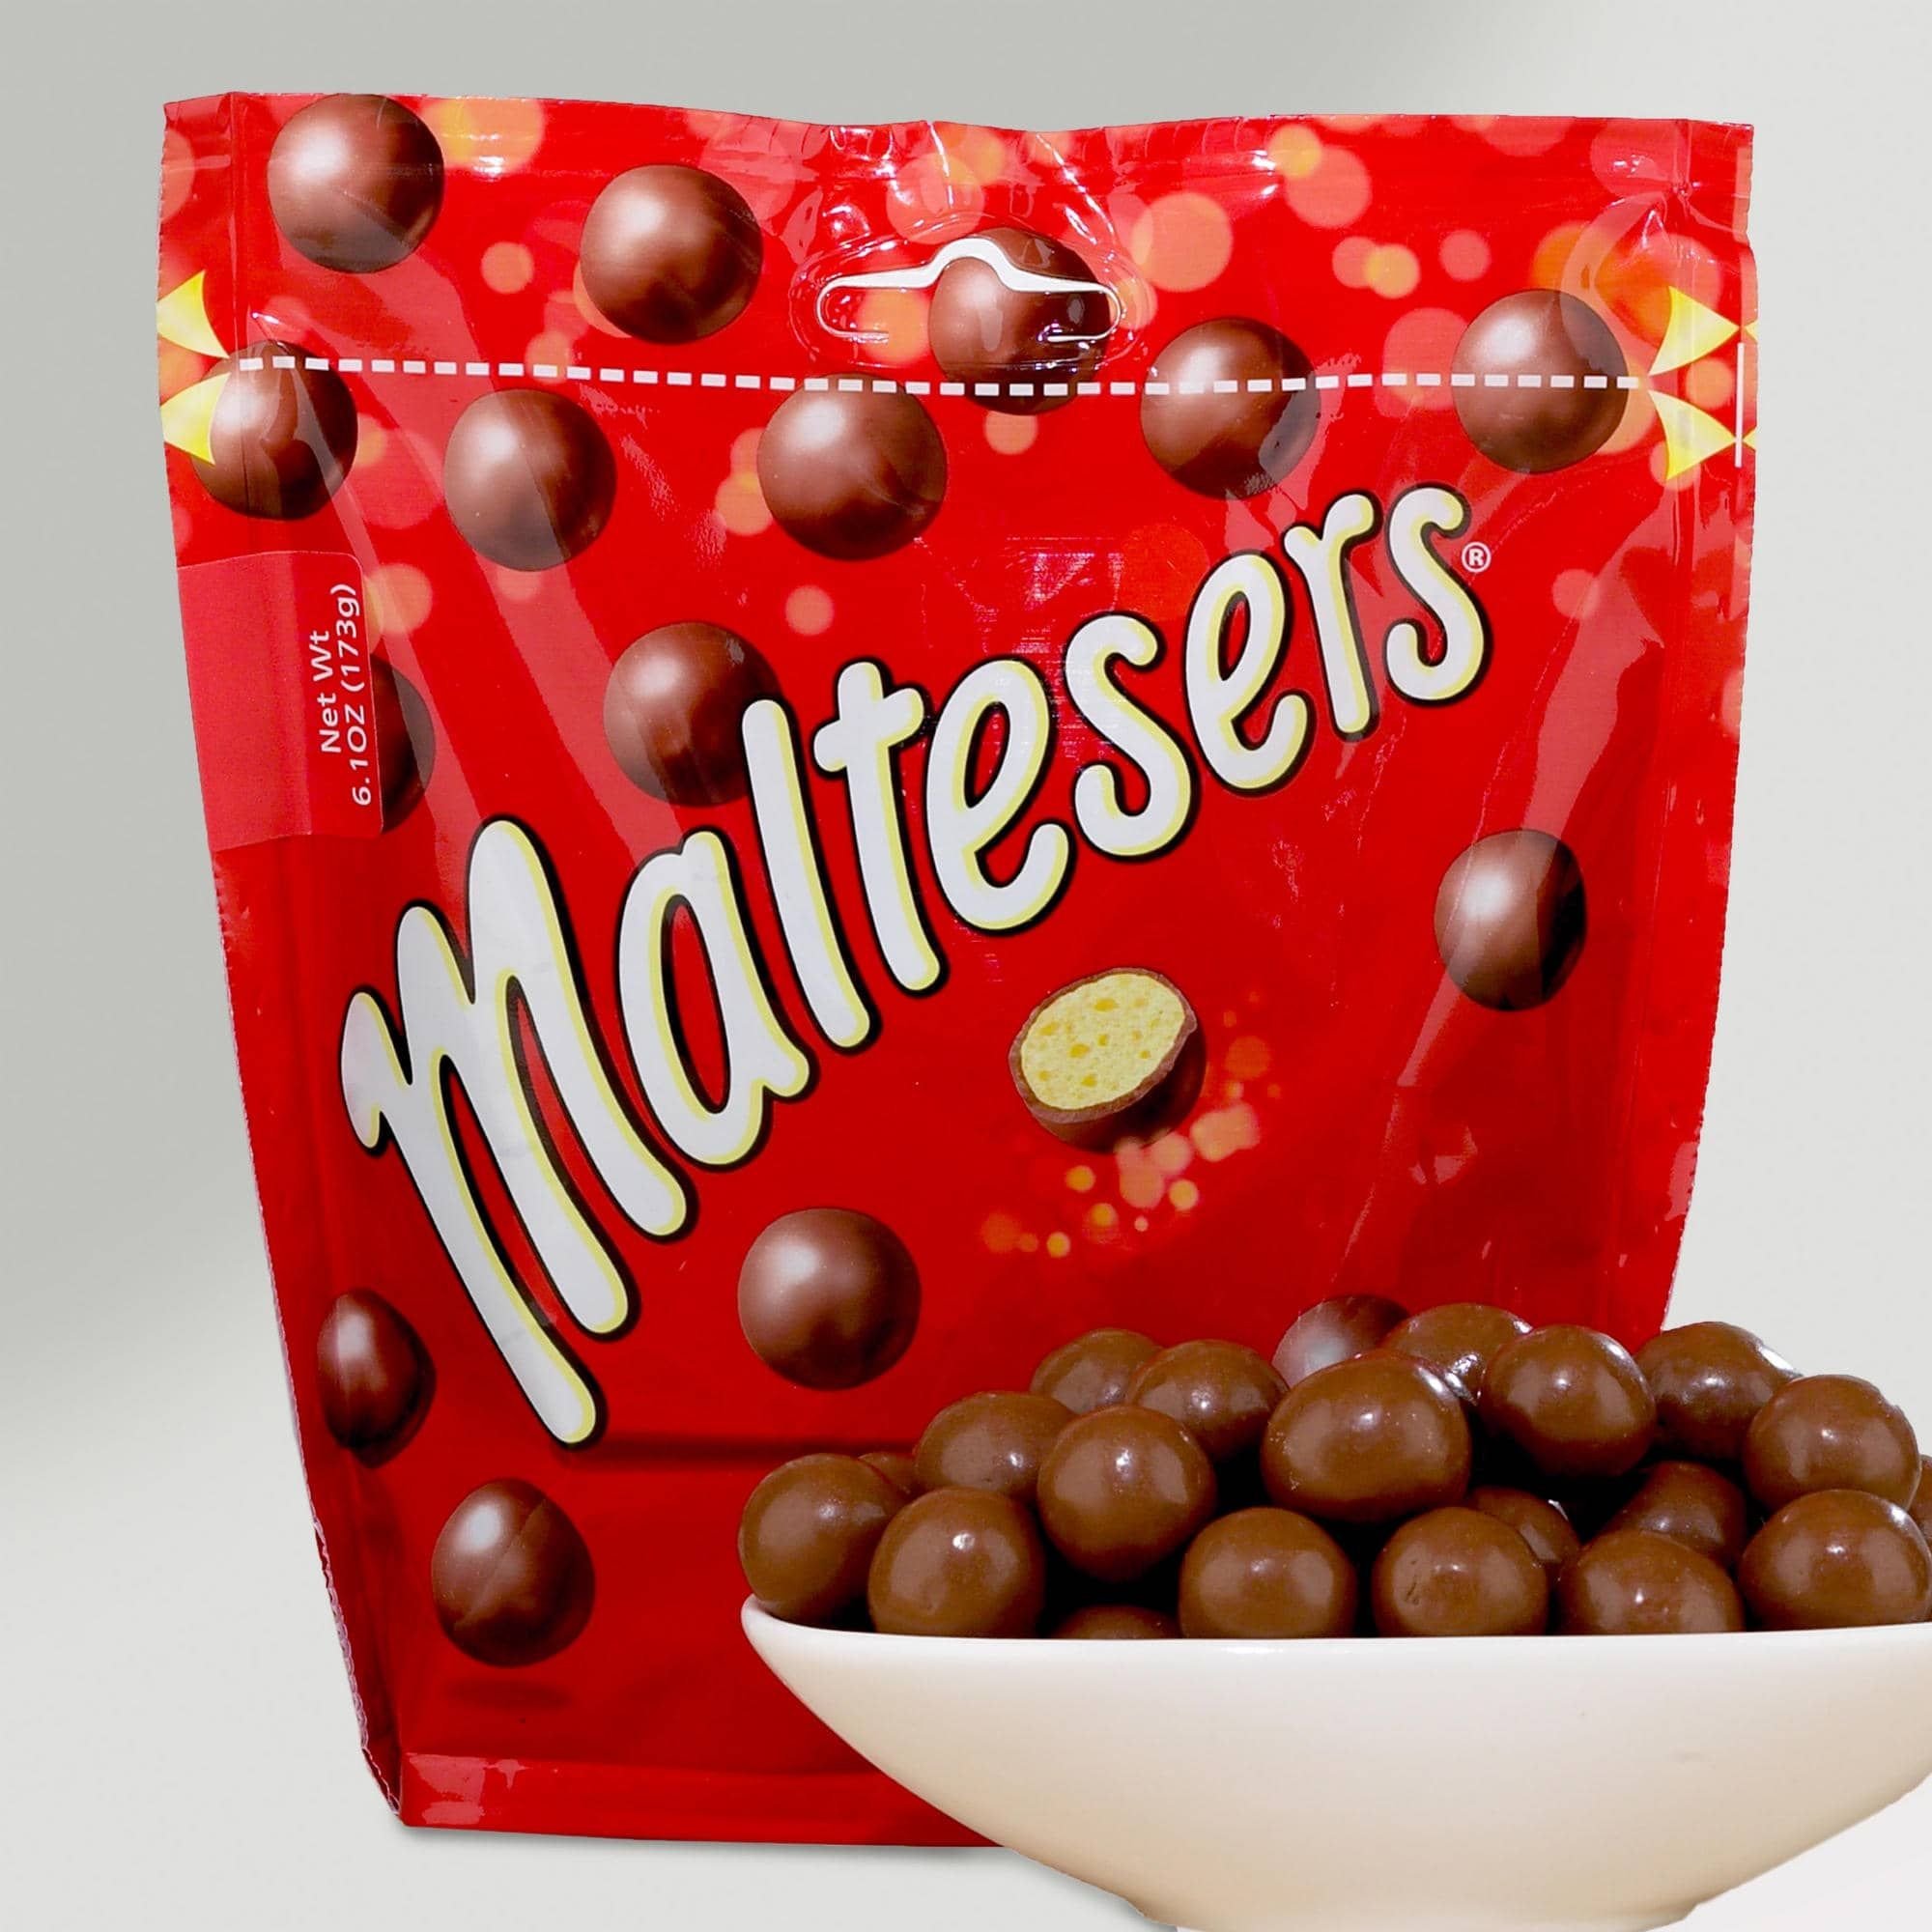 Хрустящие шоколадные шарики. Мальтизерс. Шоколадные шарики Maltesers. Конфеты Maltesers шоколадные шарики. Драже Мальтизерс.